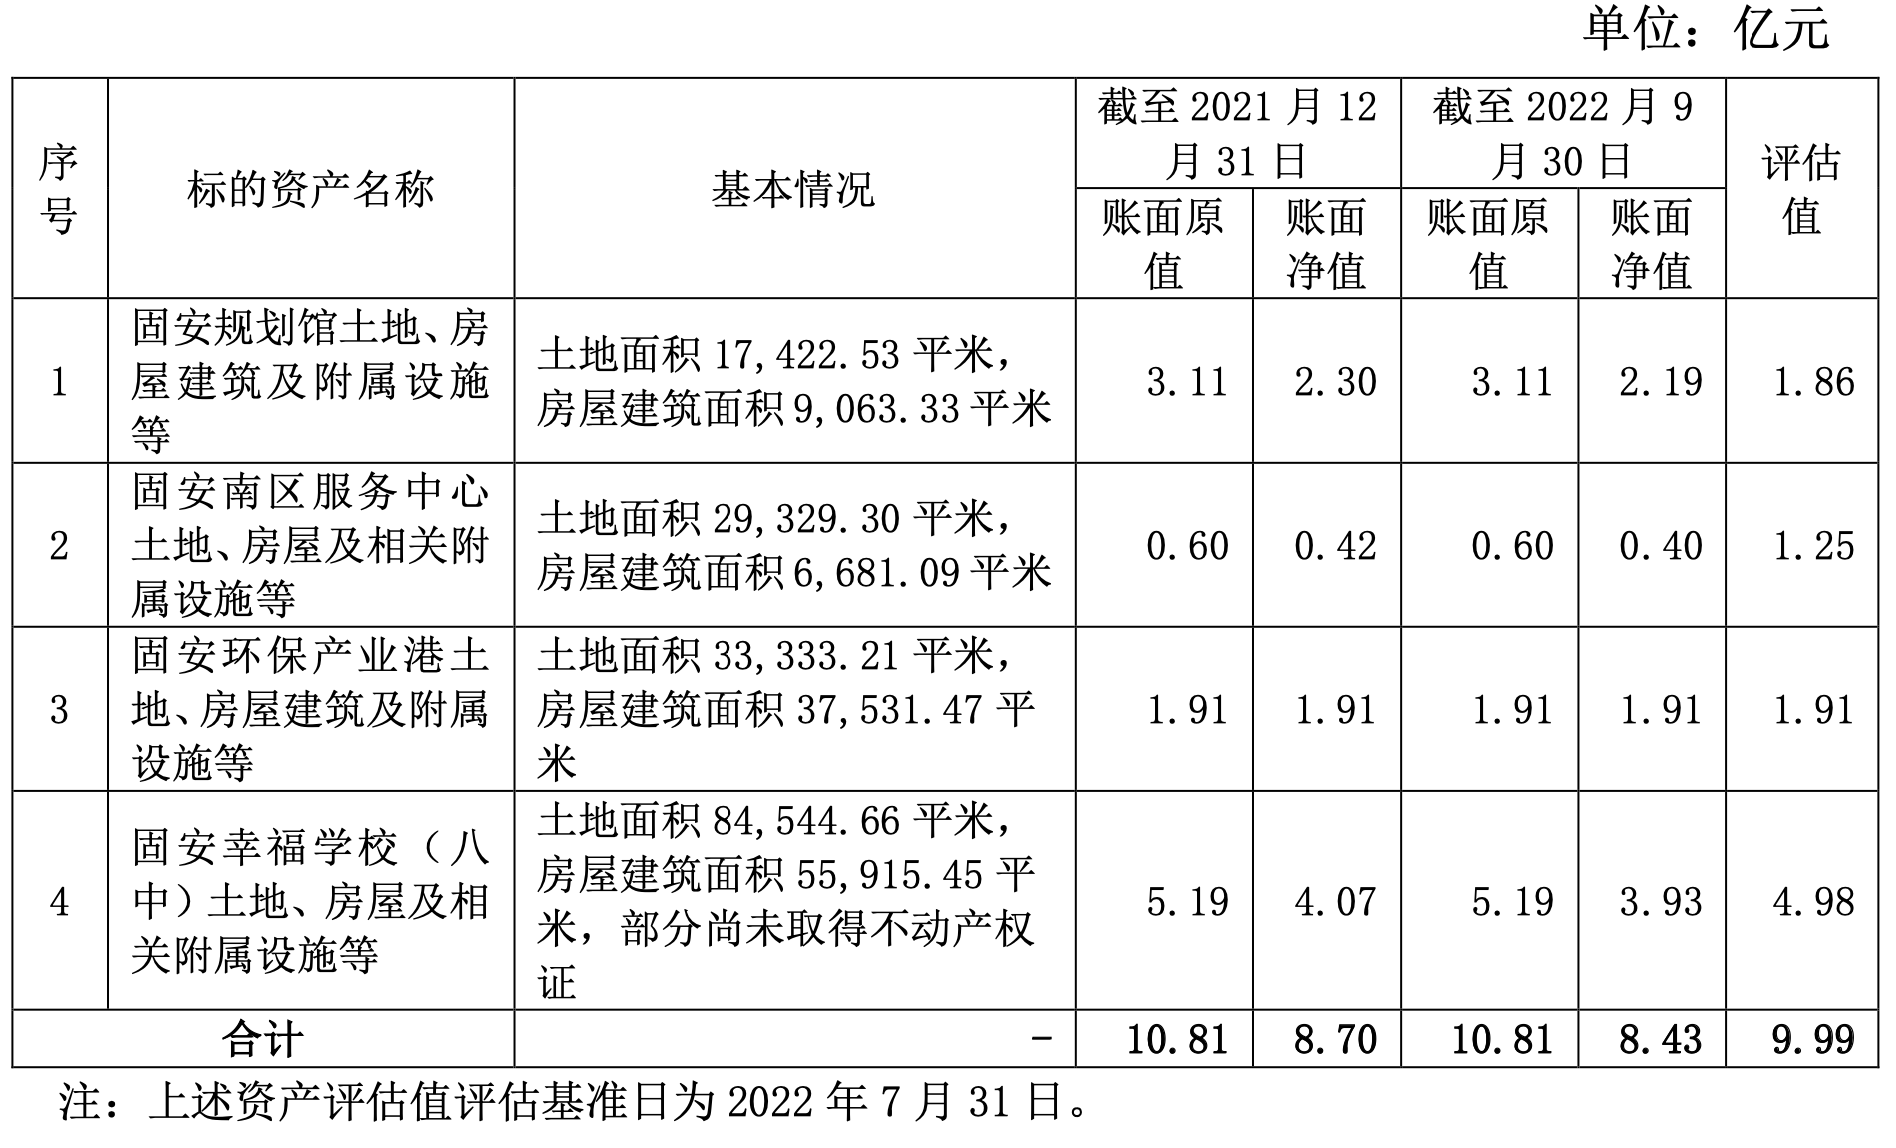 华夏幸福9.99亿元出售河北固安4项资产 用于固安保交房